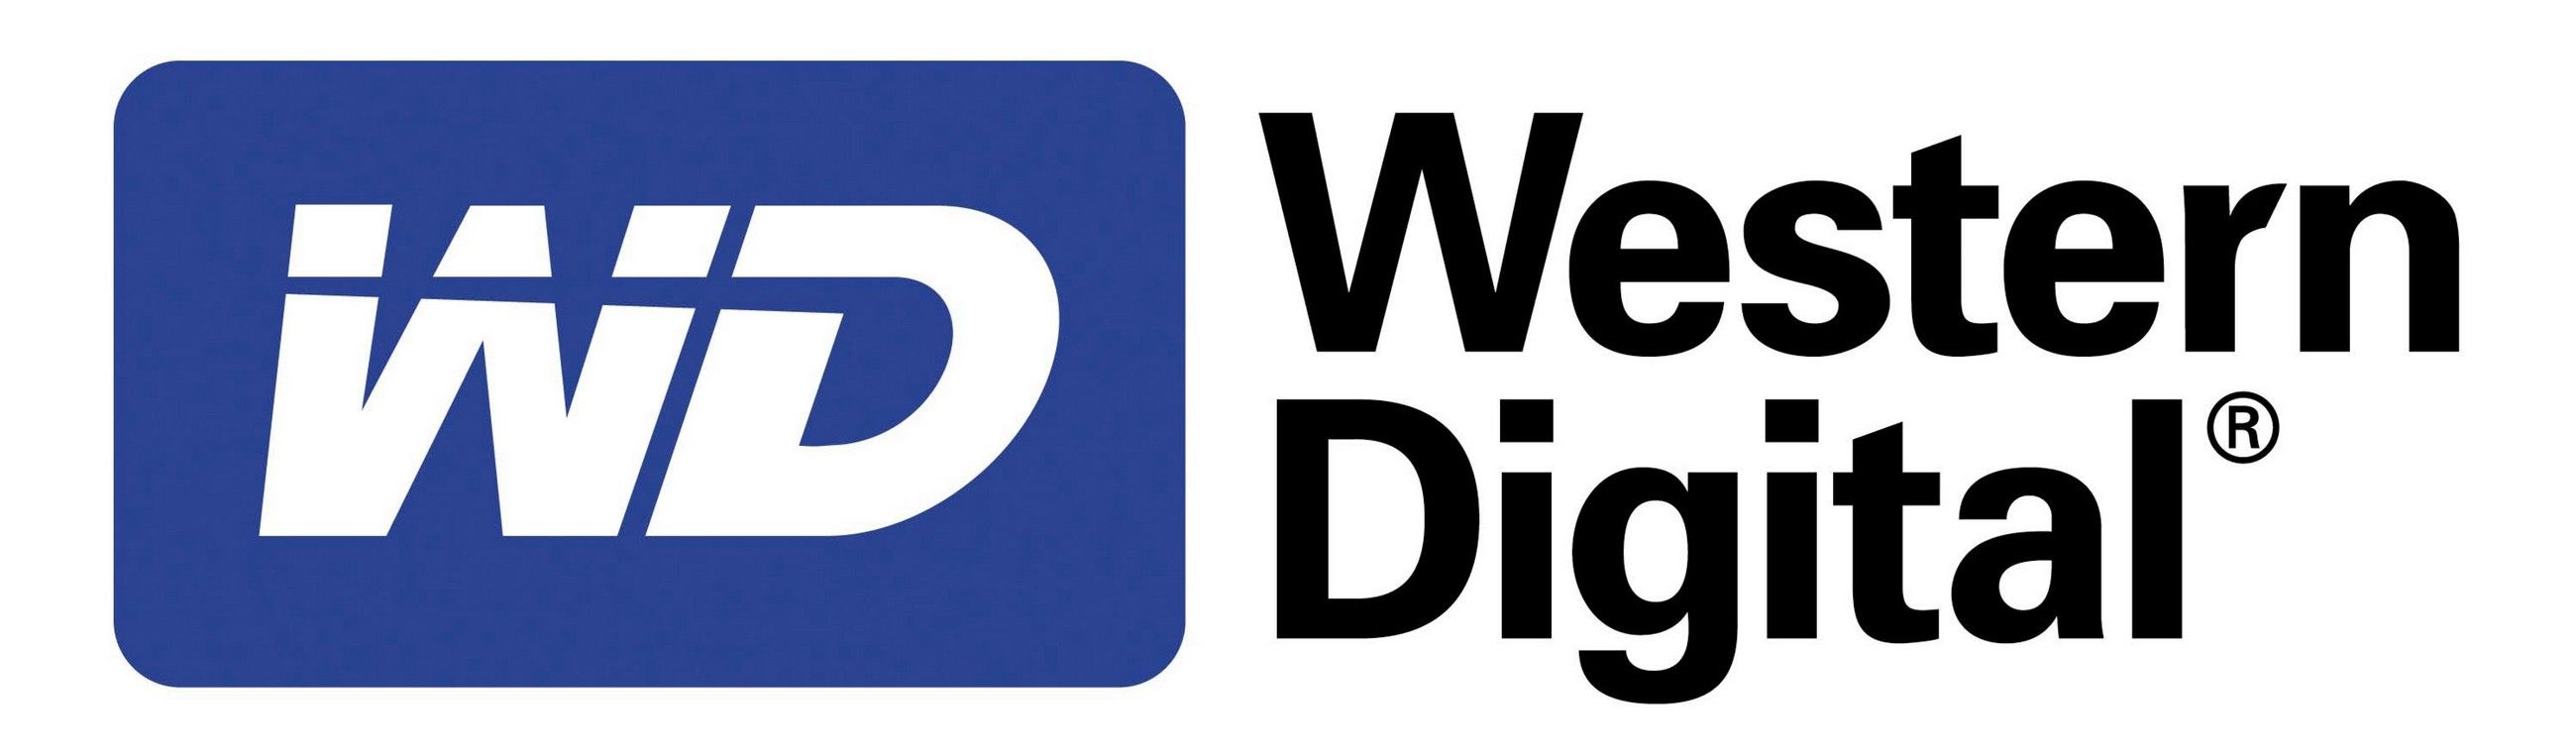 Hdd-uri interne Western Digital